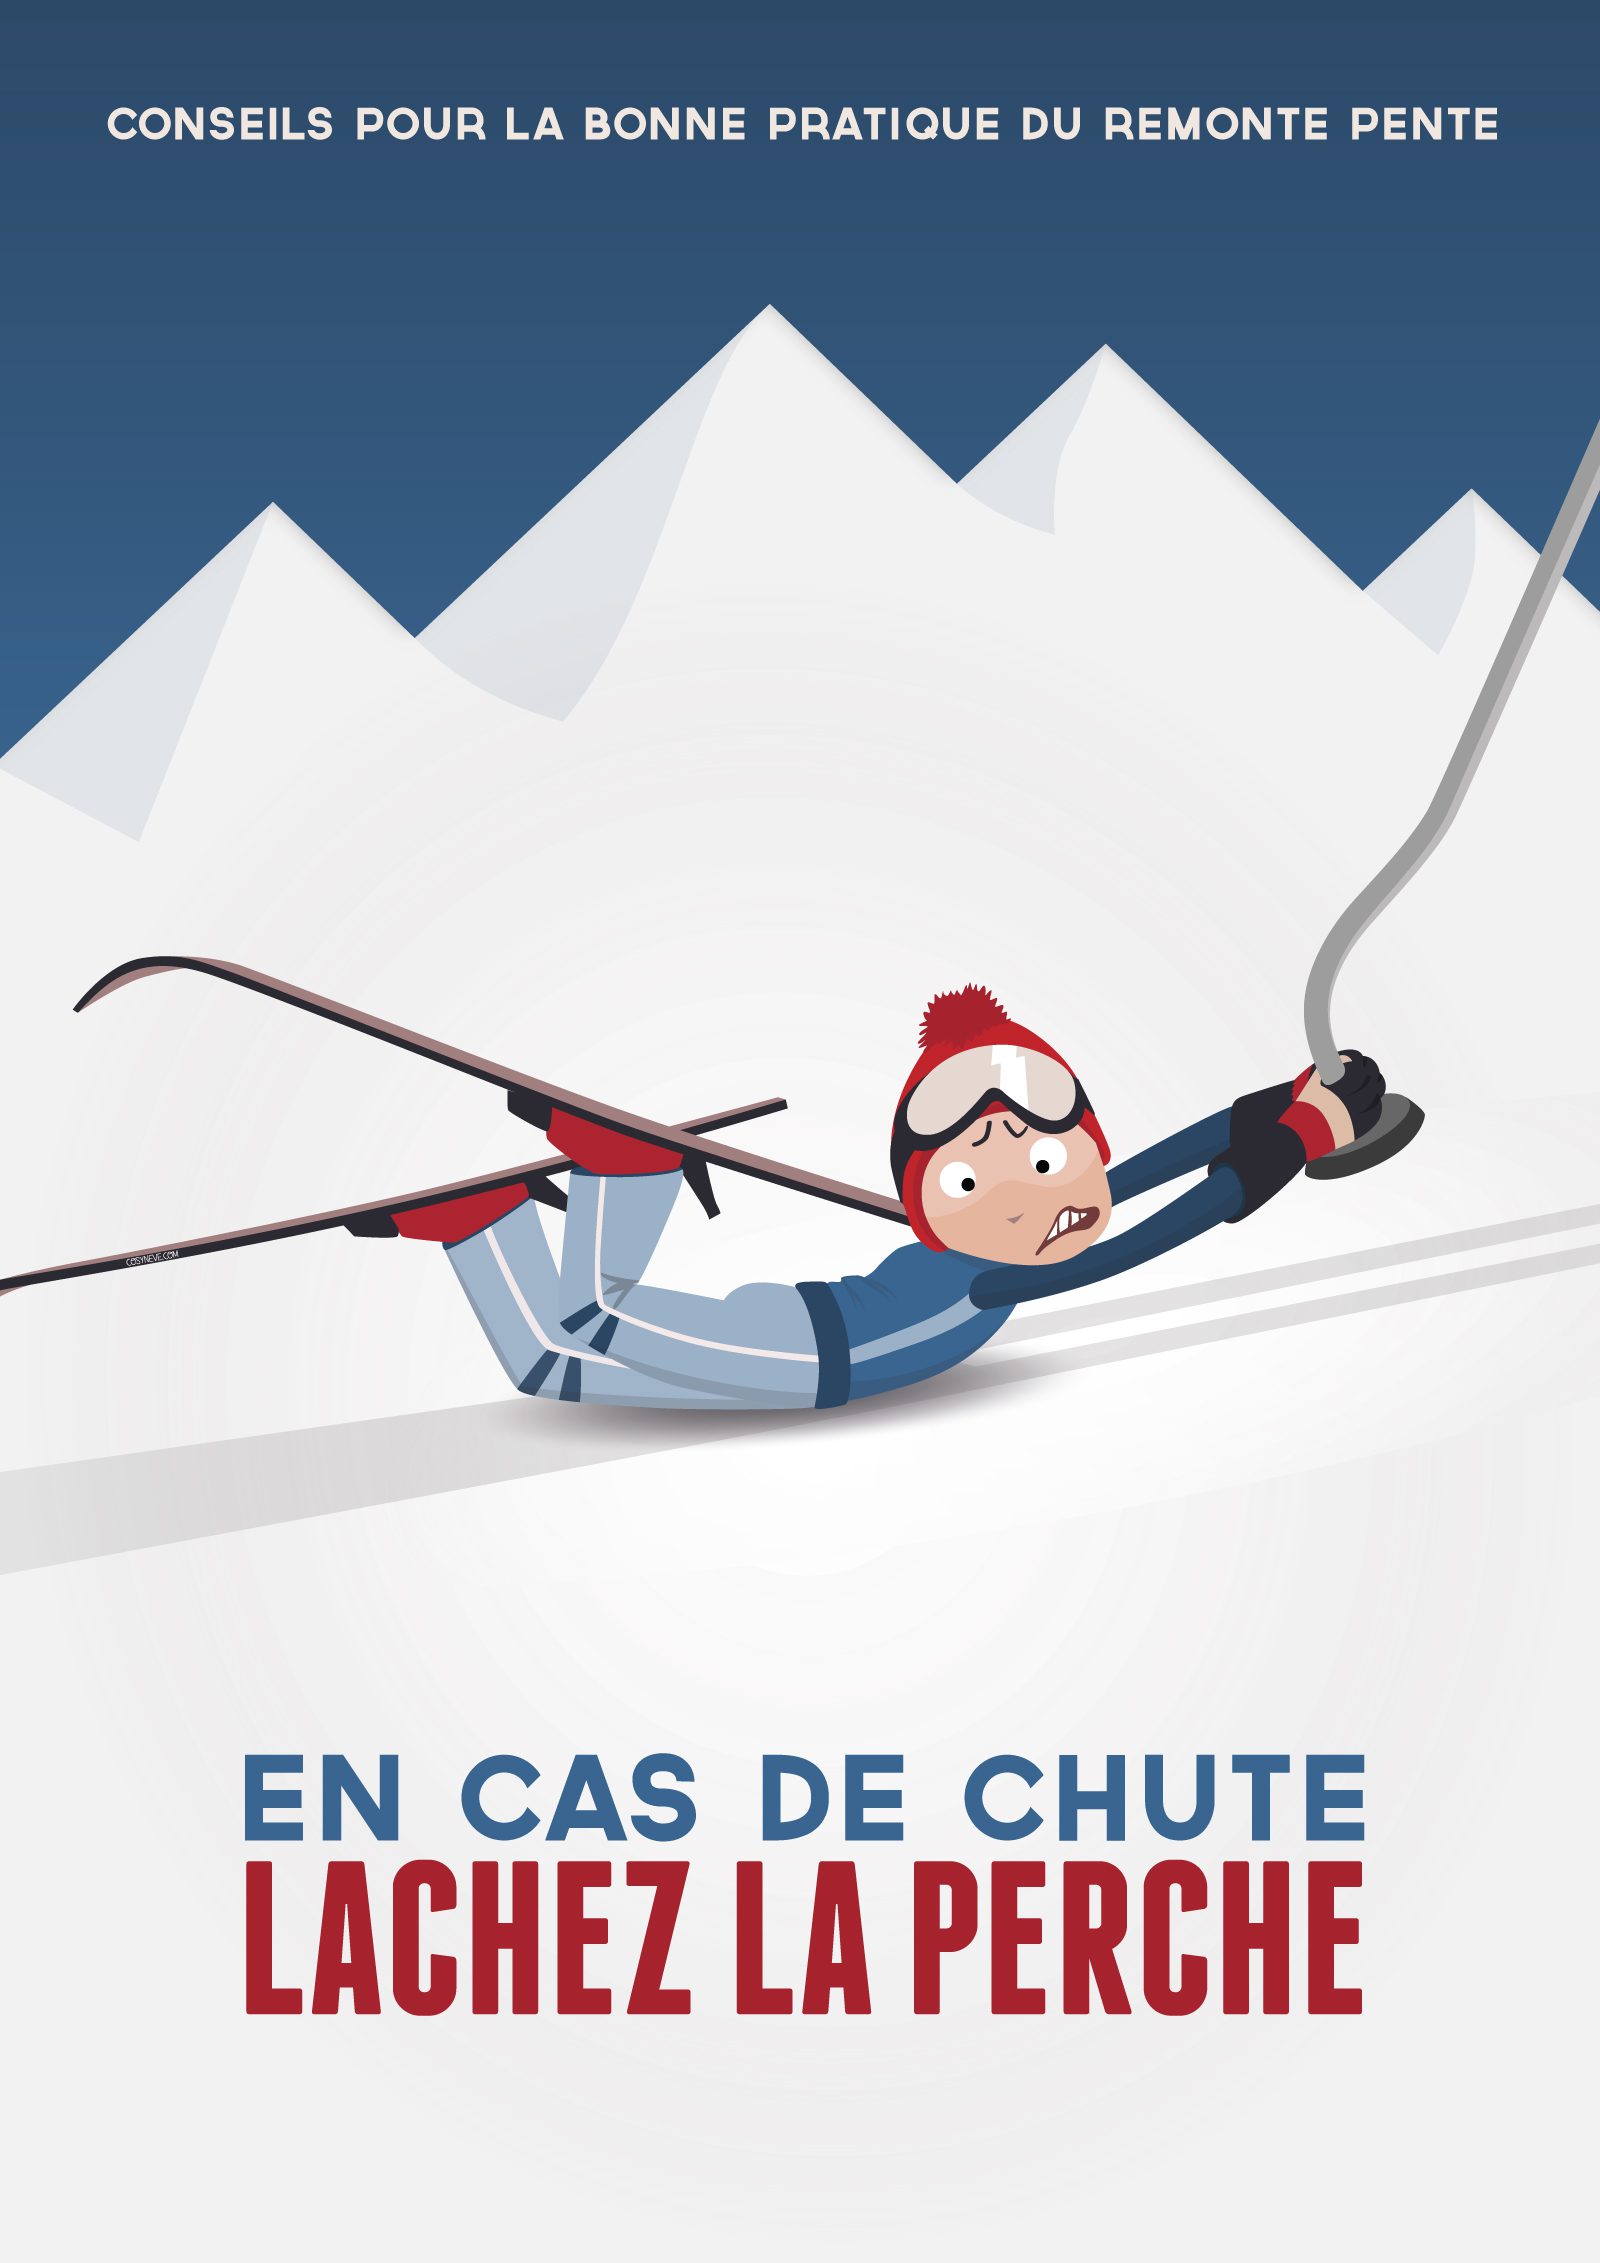 L’impact des affiches de ski des Alpes sur la perception du paysage alpin